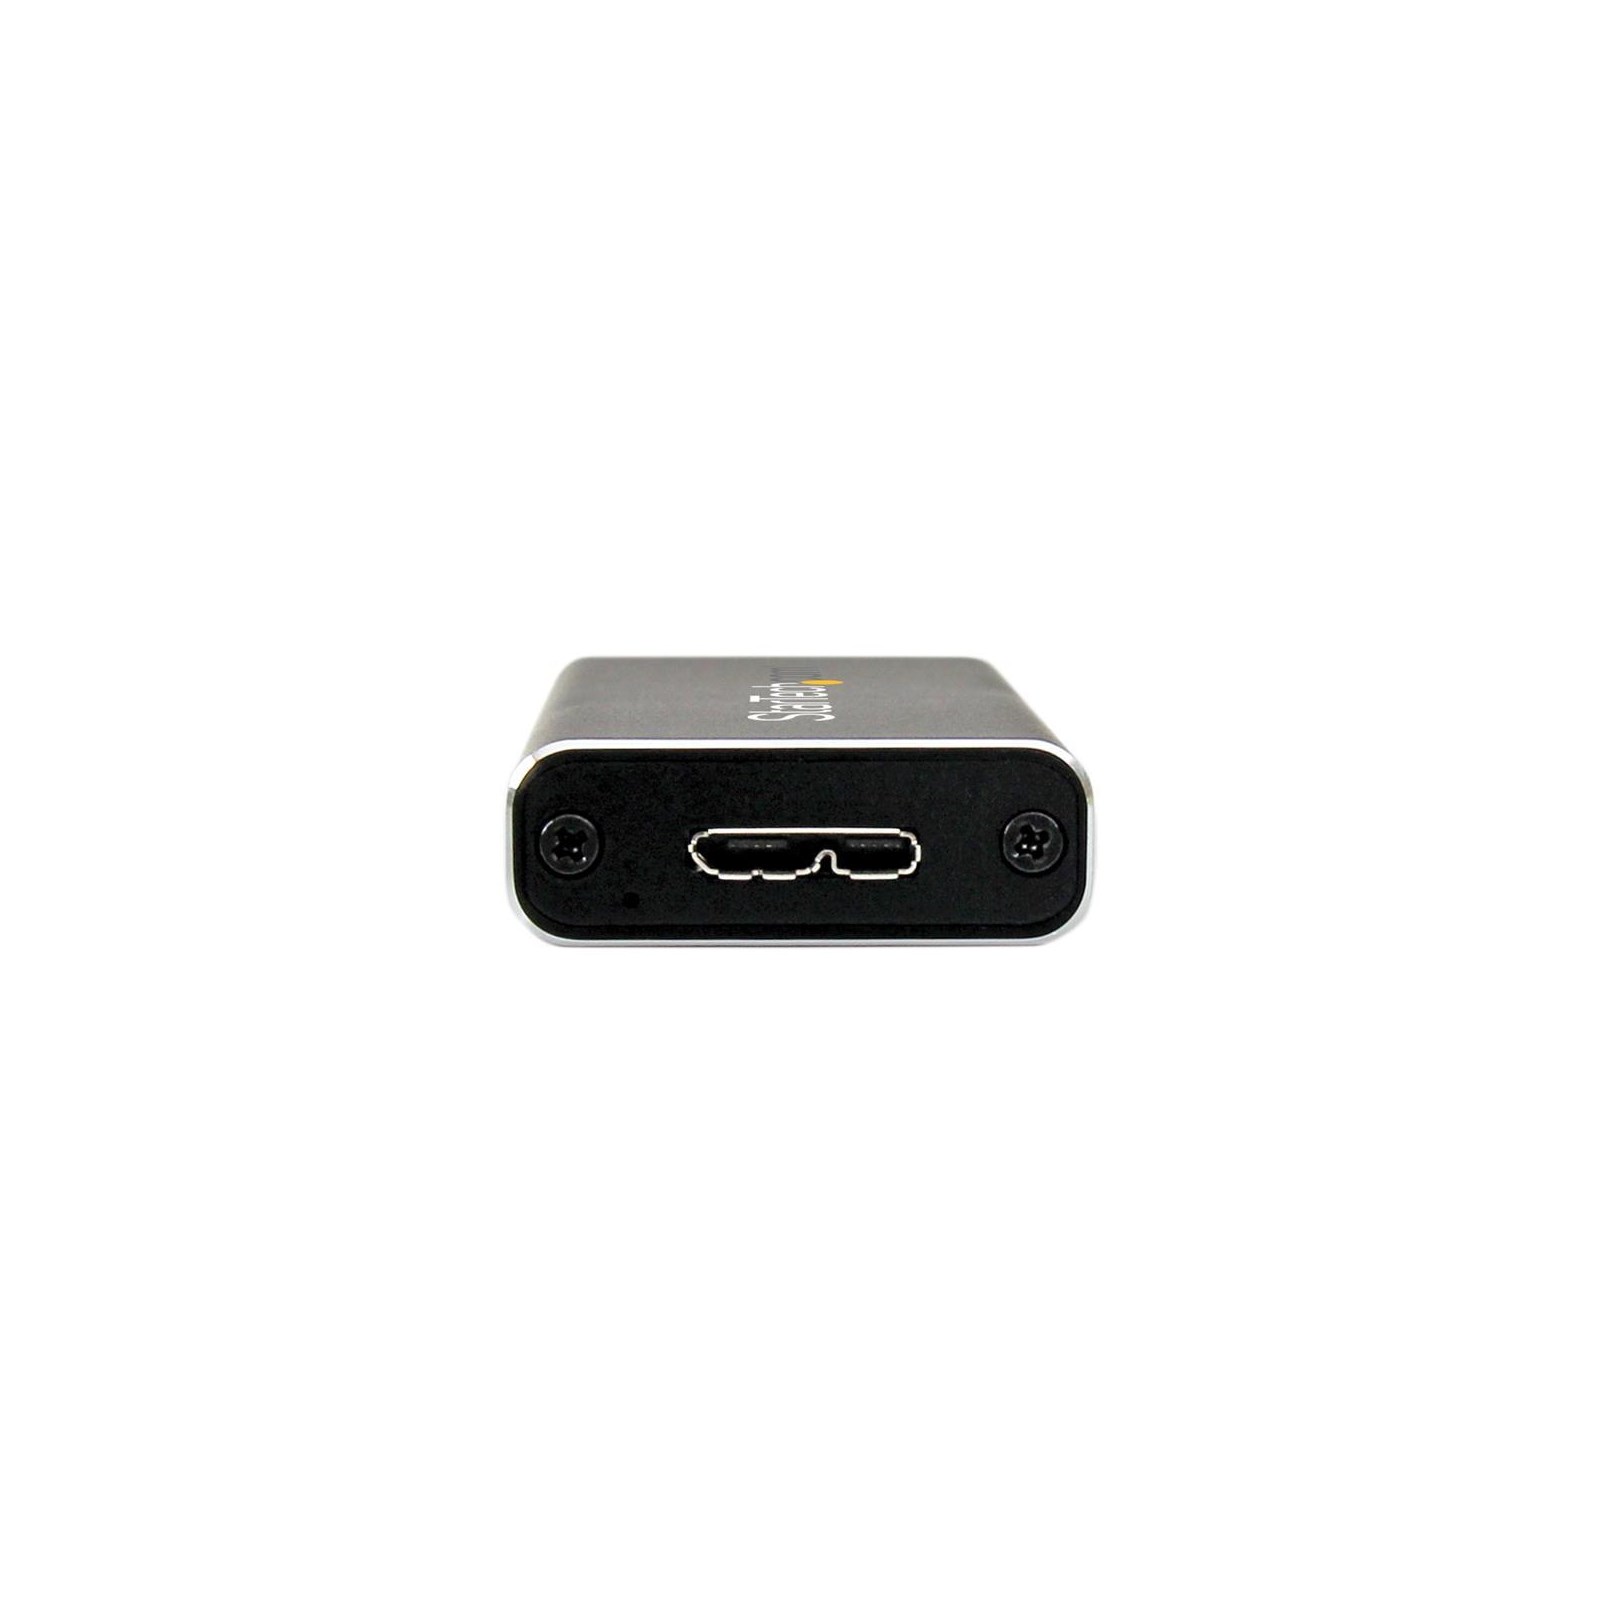 StarTech.com USB 3.0 to M.2 SATA External SSD Enclosu